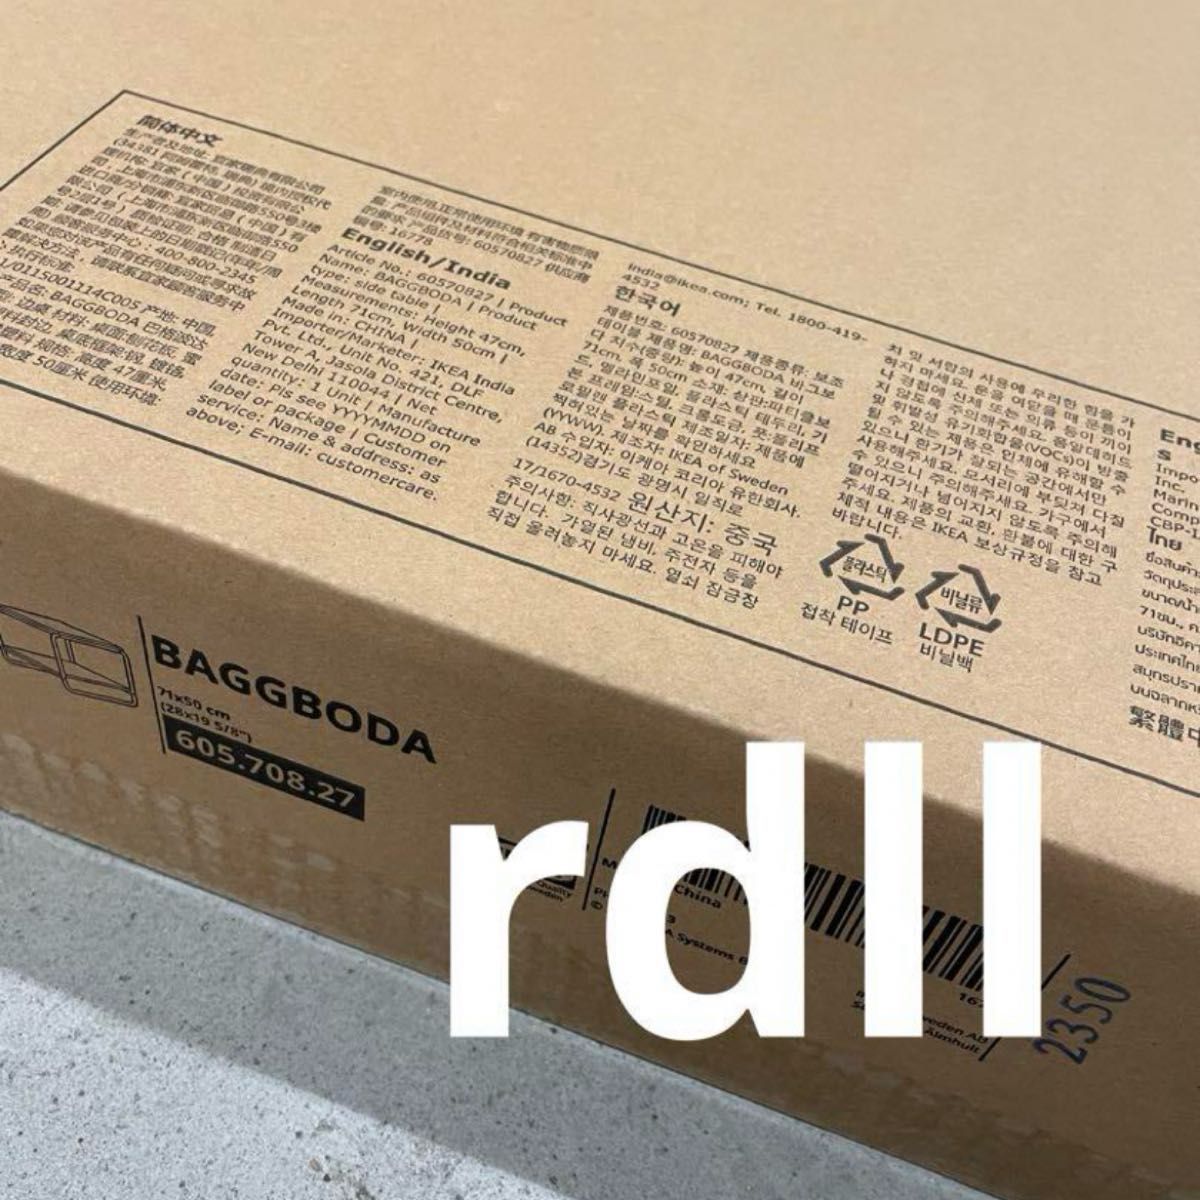 バッグボーダ Baggboda IKEA 送料無料 新品未開封 限定復刻品 テーブル コンパクト